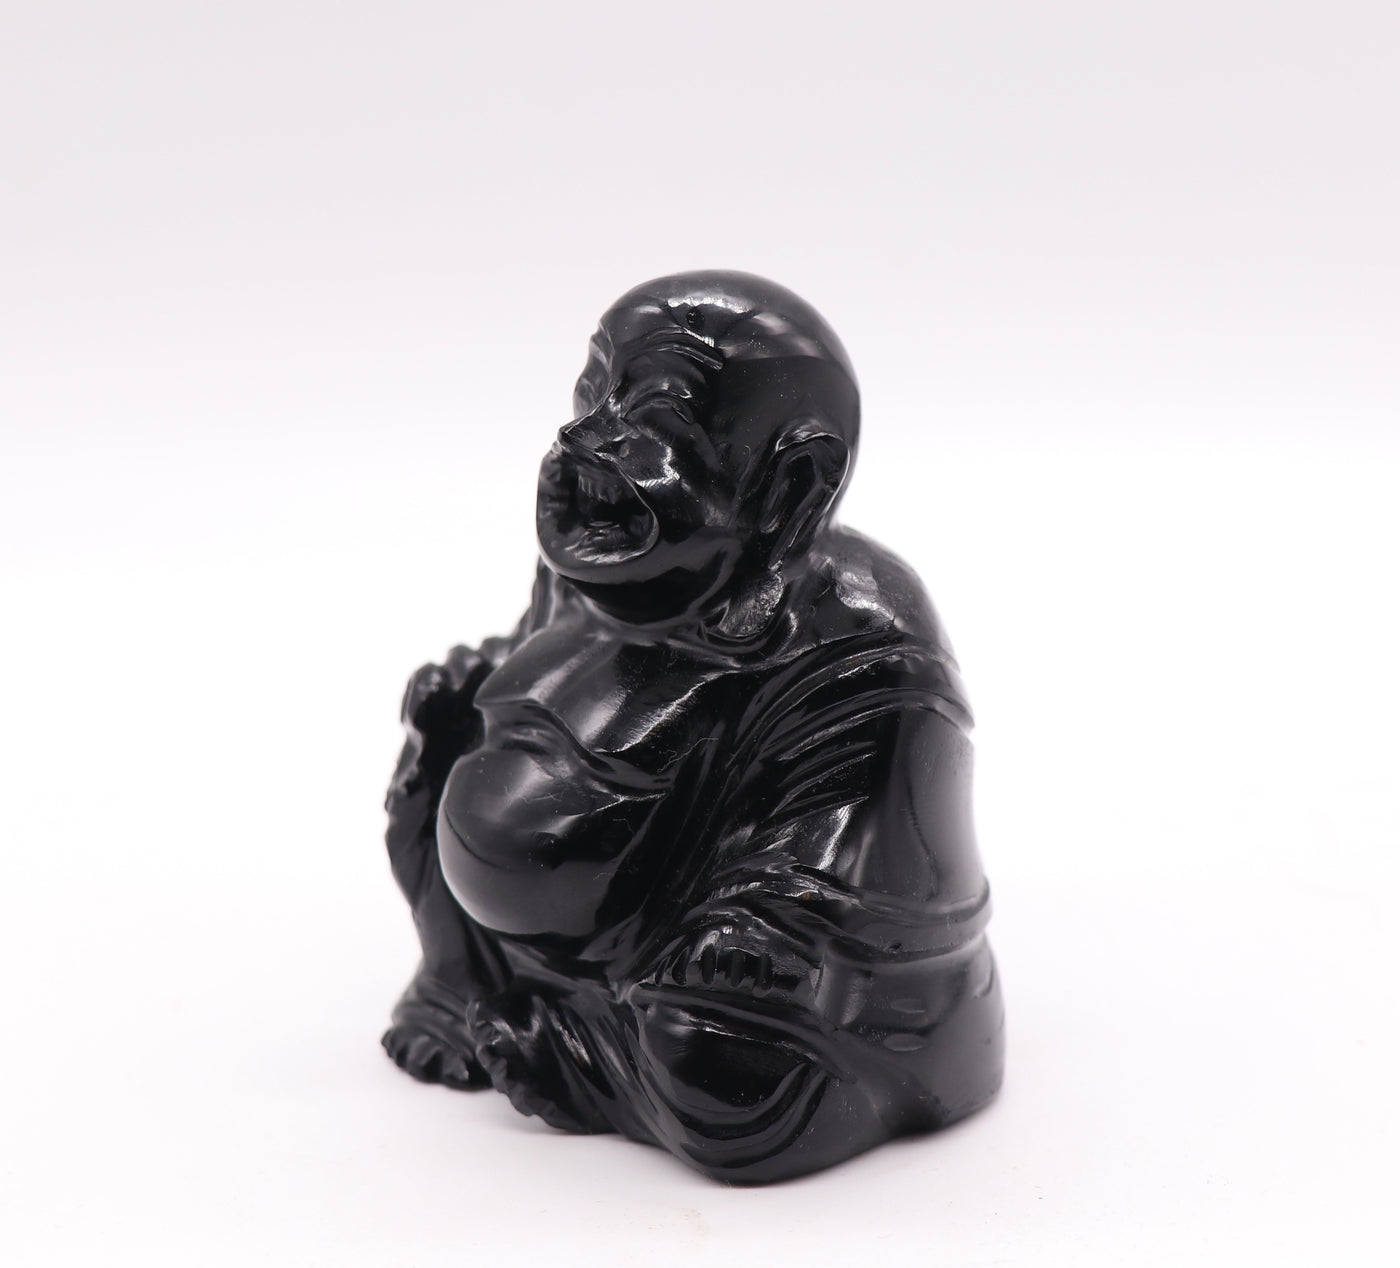 1244 Black Obsidian Buddha 201g 3in x 2in